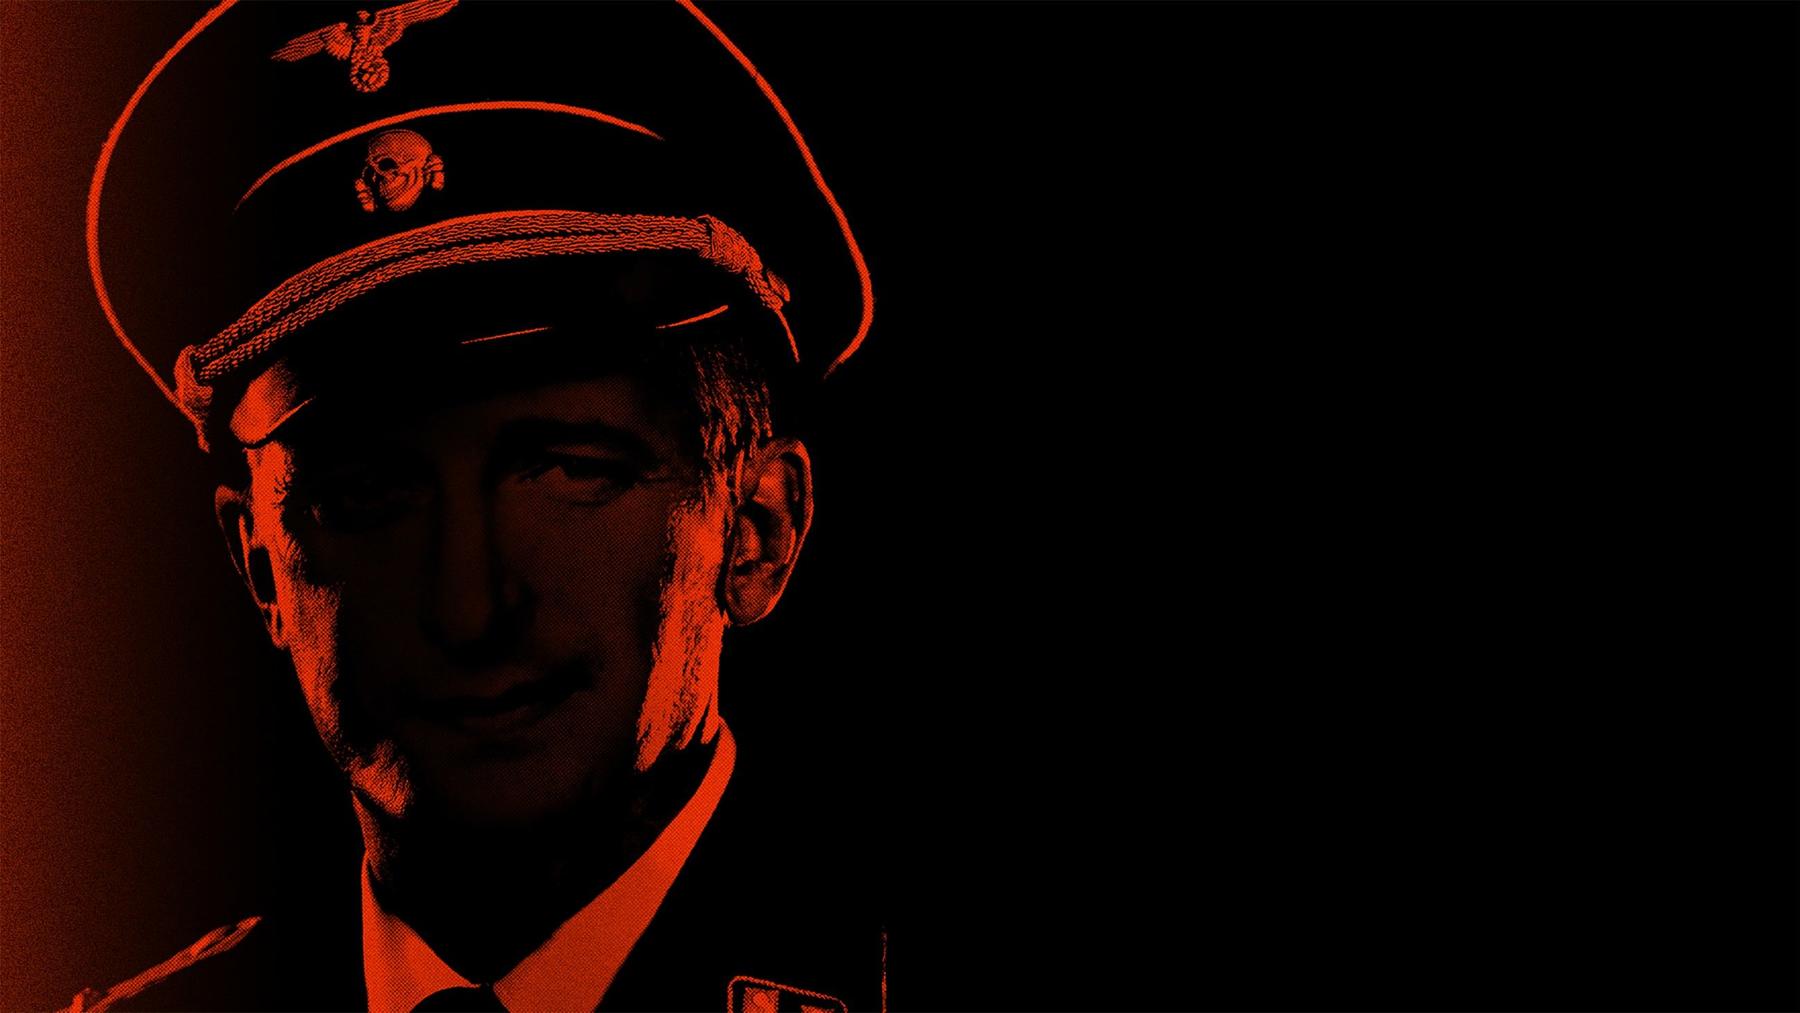 Adolf Eichmann - Geständnis eines Nazi-Verbrechers